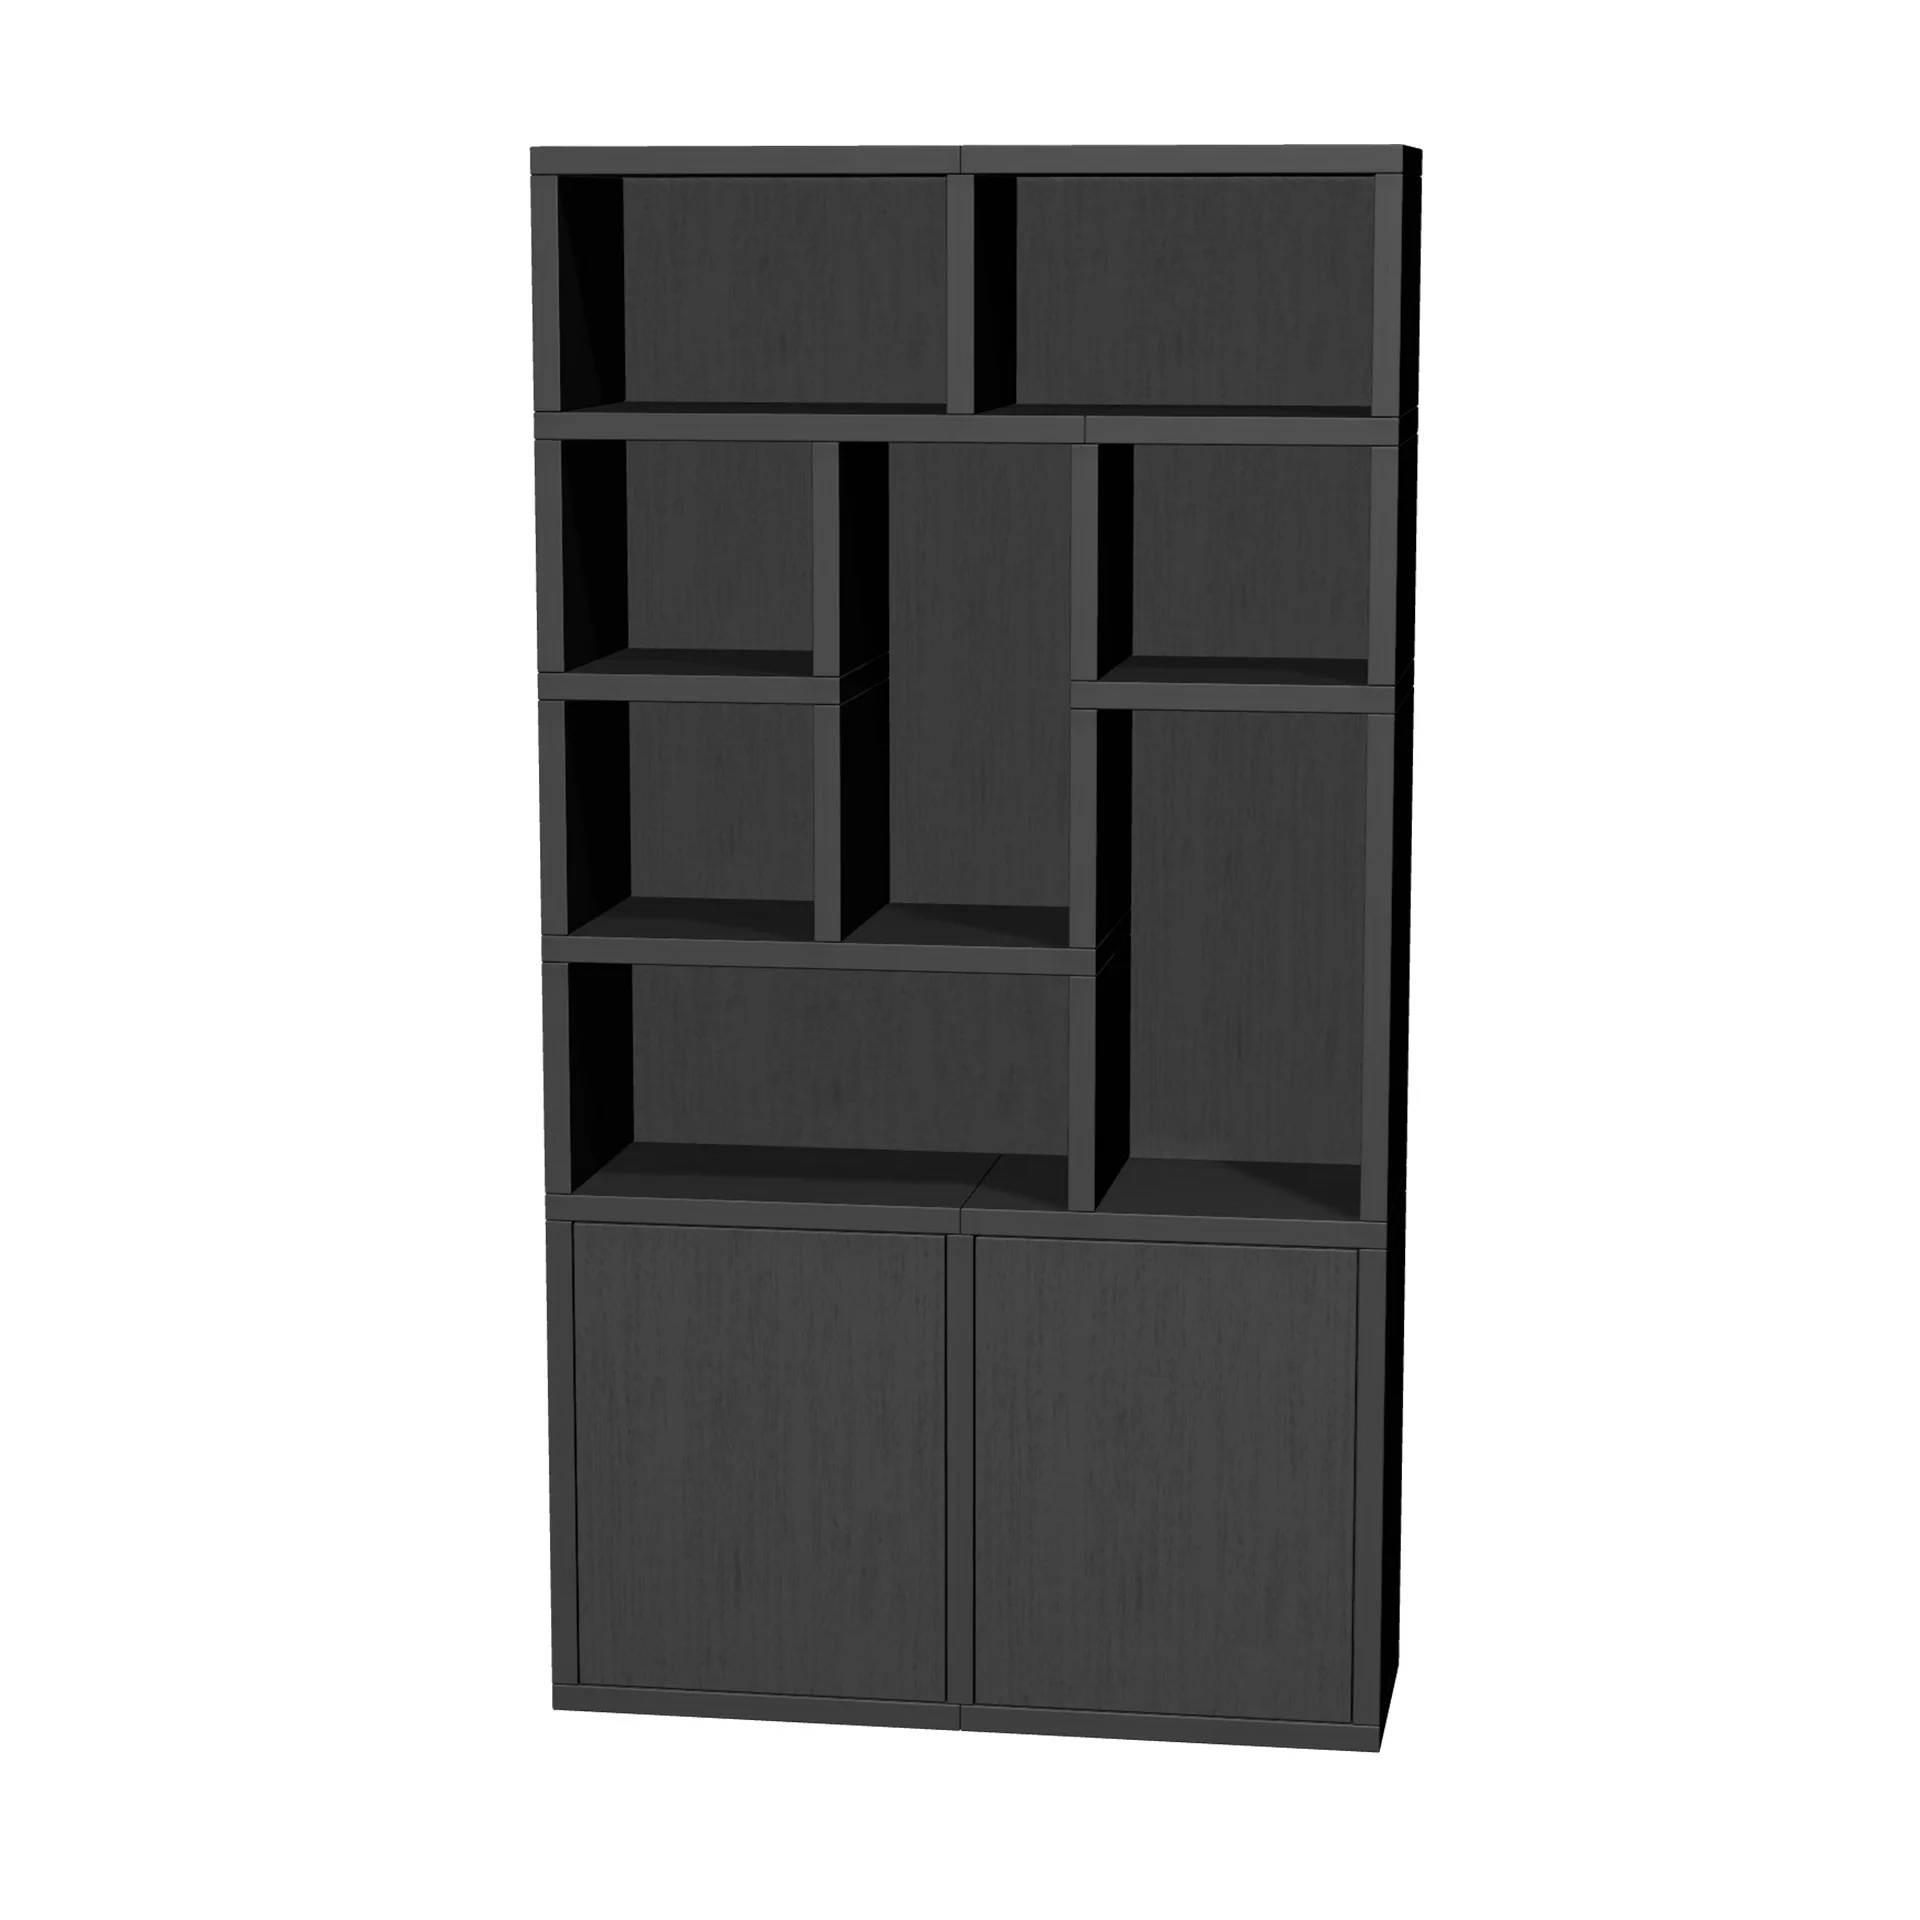 TSFC044 in black oak furniture board